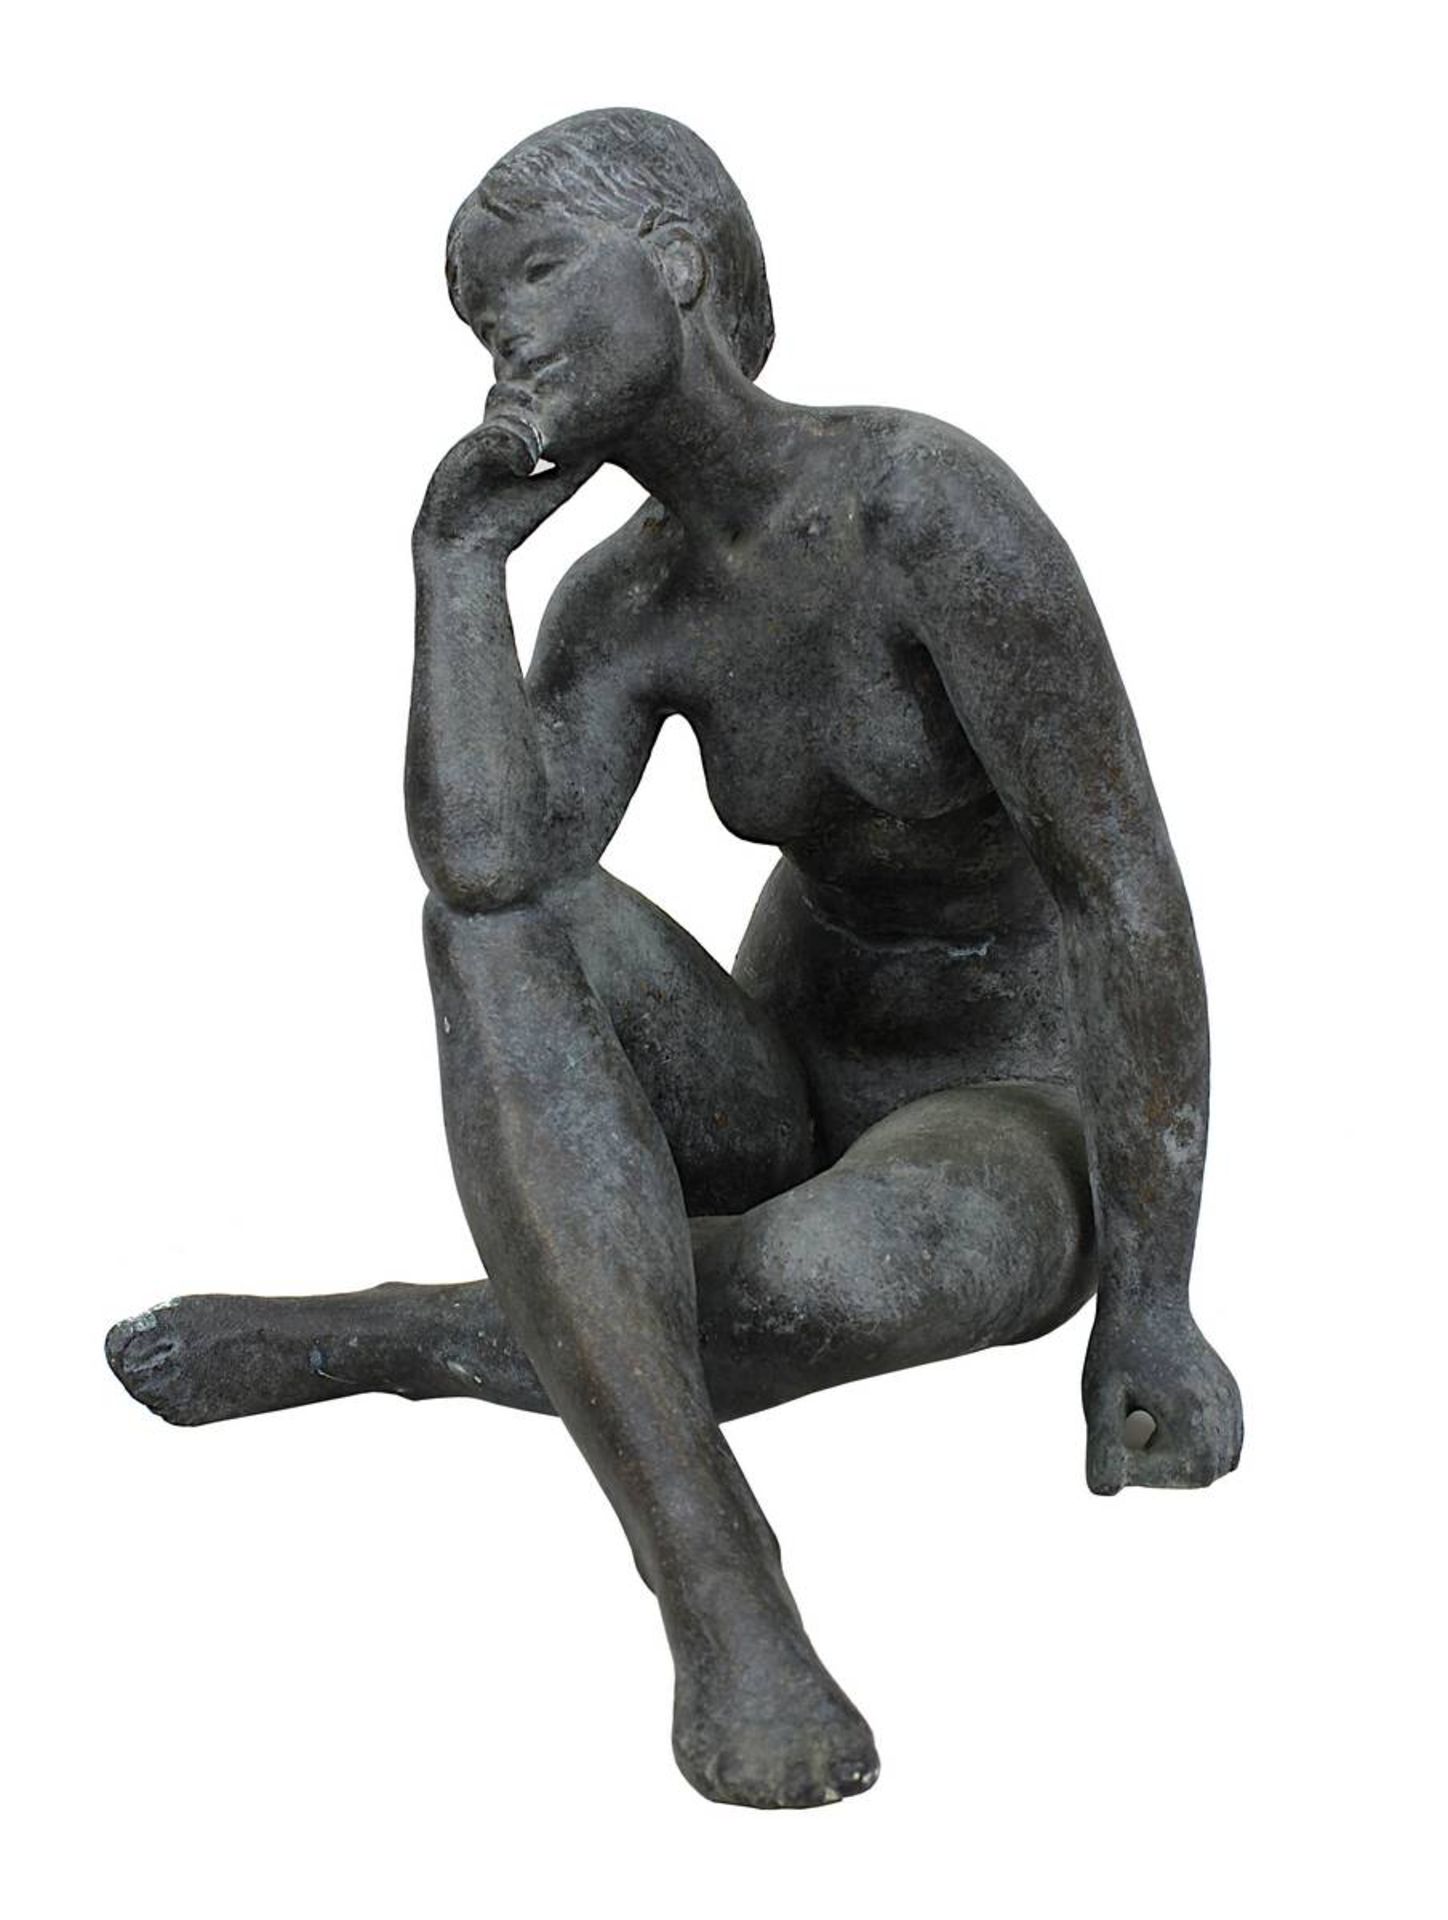 Faltermeier, Heinrich (München 1909 - 1999 Piesenkam), "Sinnende", sitzender weiblicher Akt